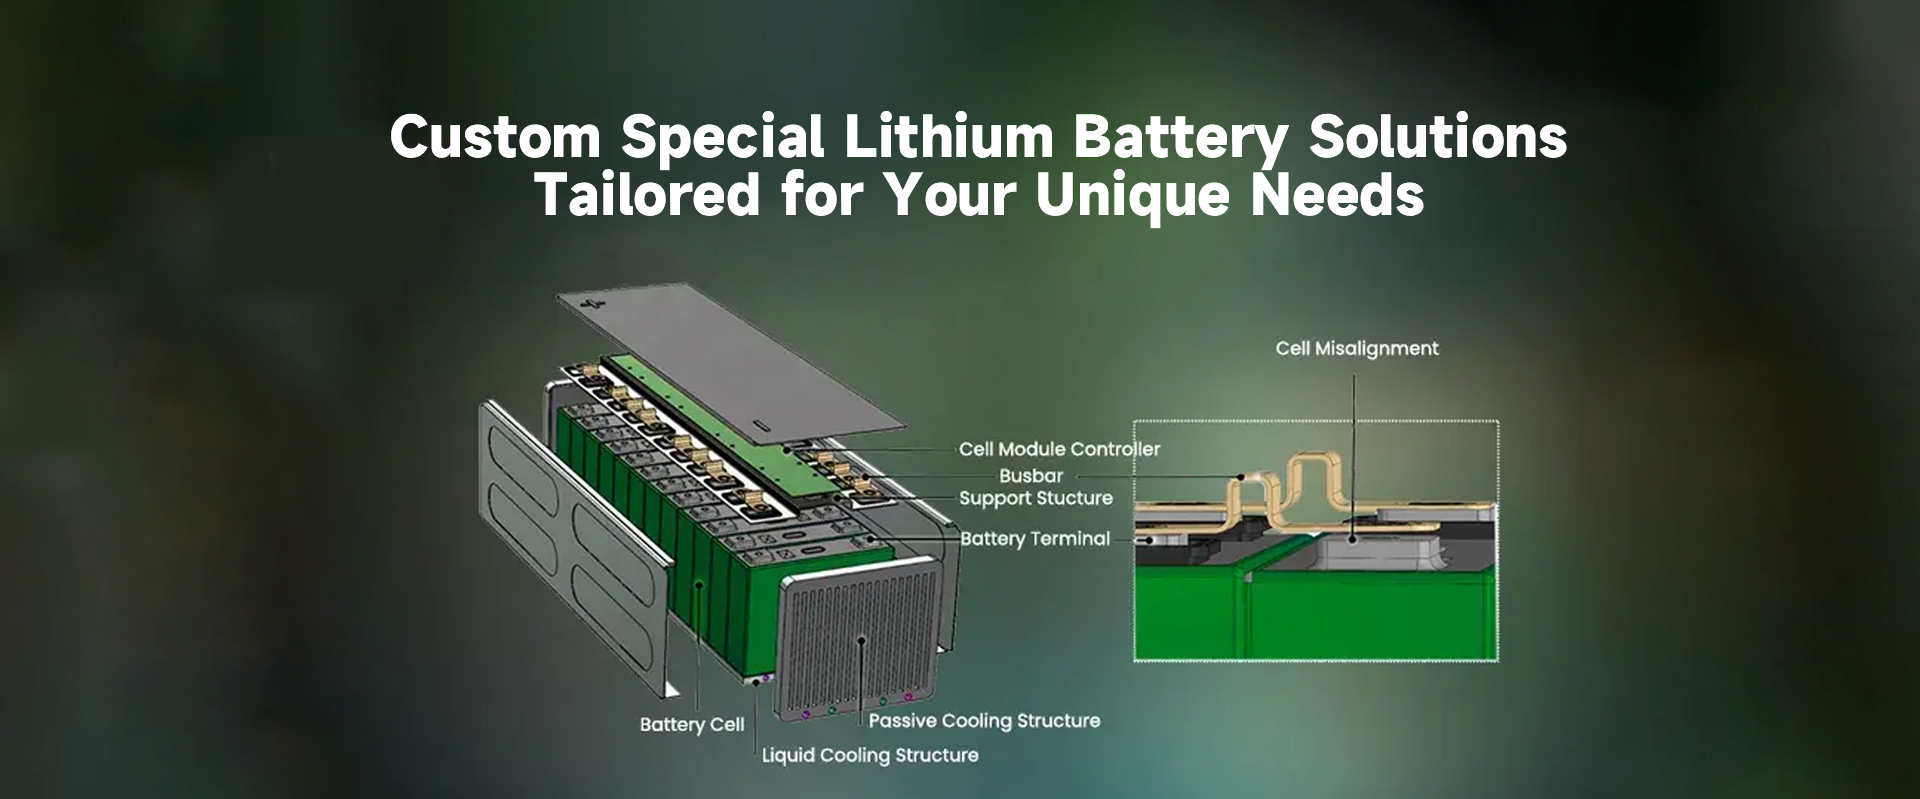 စိတ်ကြိုက် အထူး Lithium ဘက်ထရီ ဖြေရှင်းချက်များ